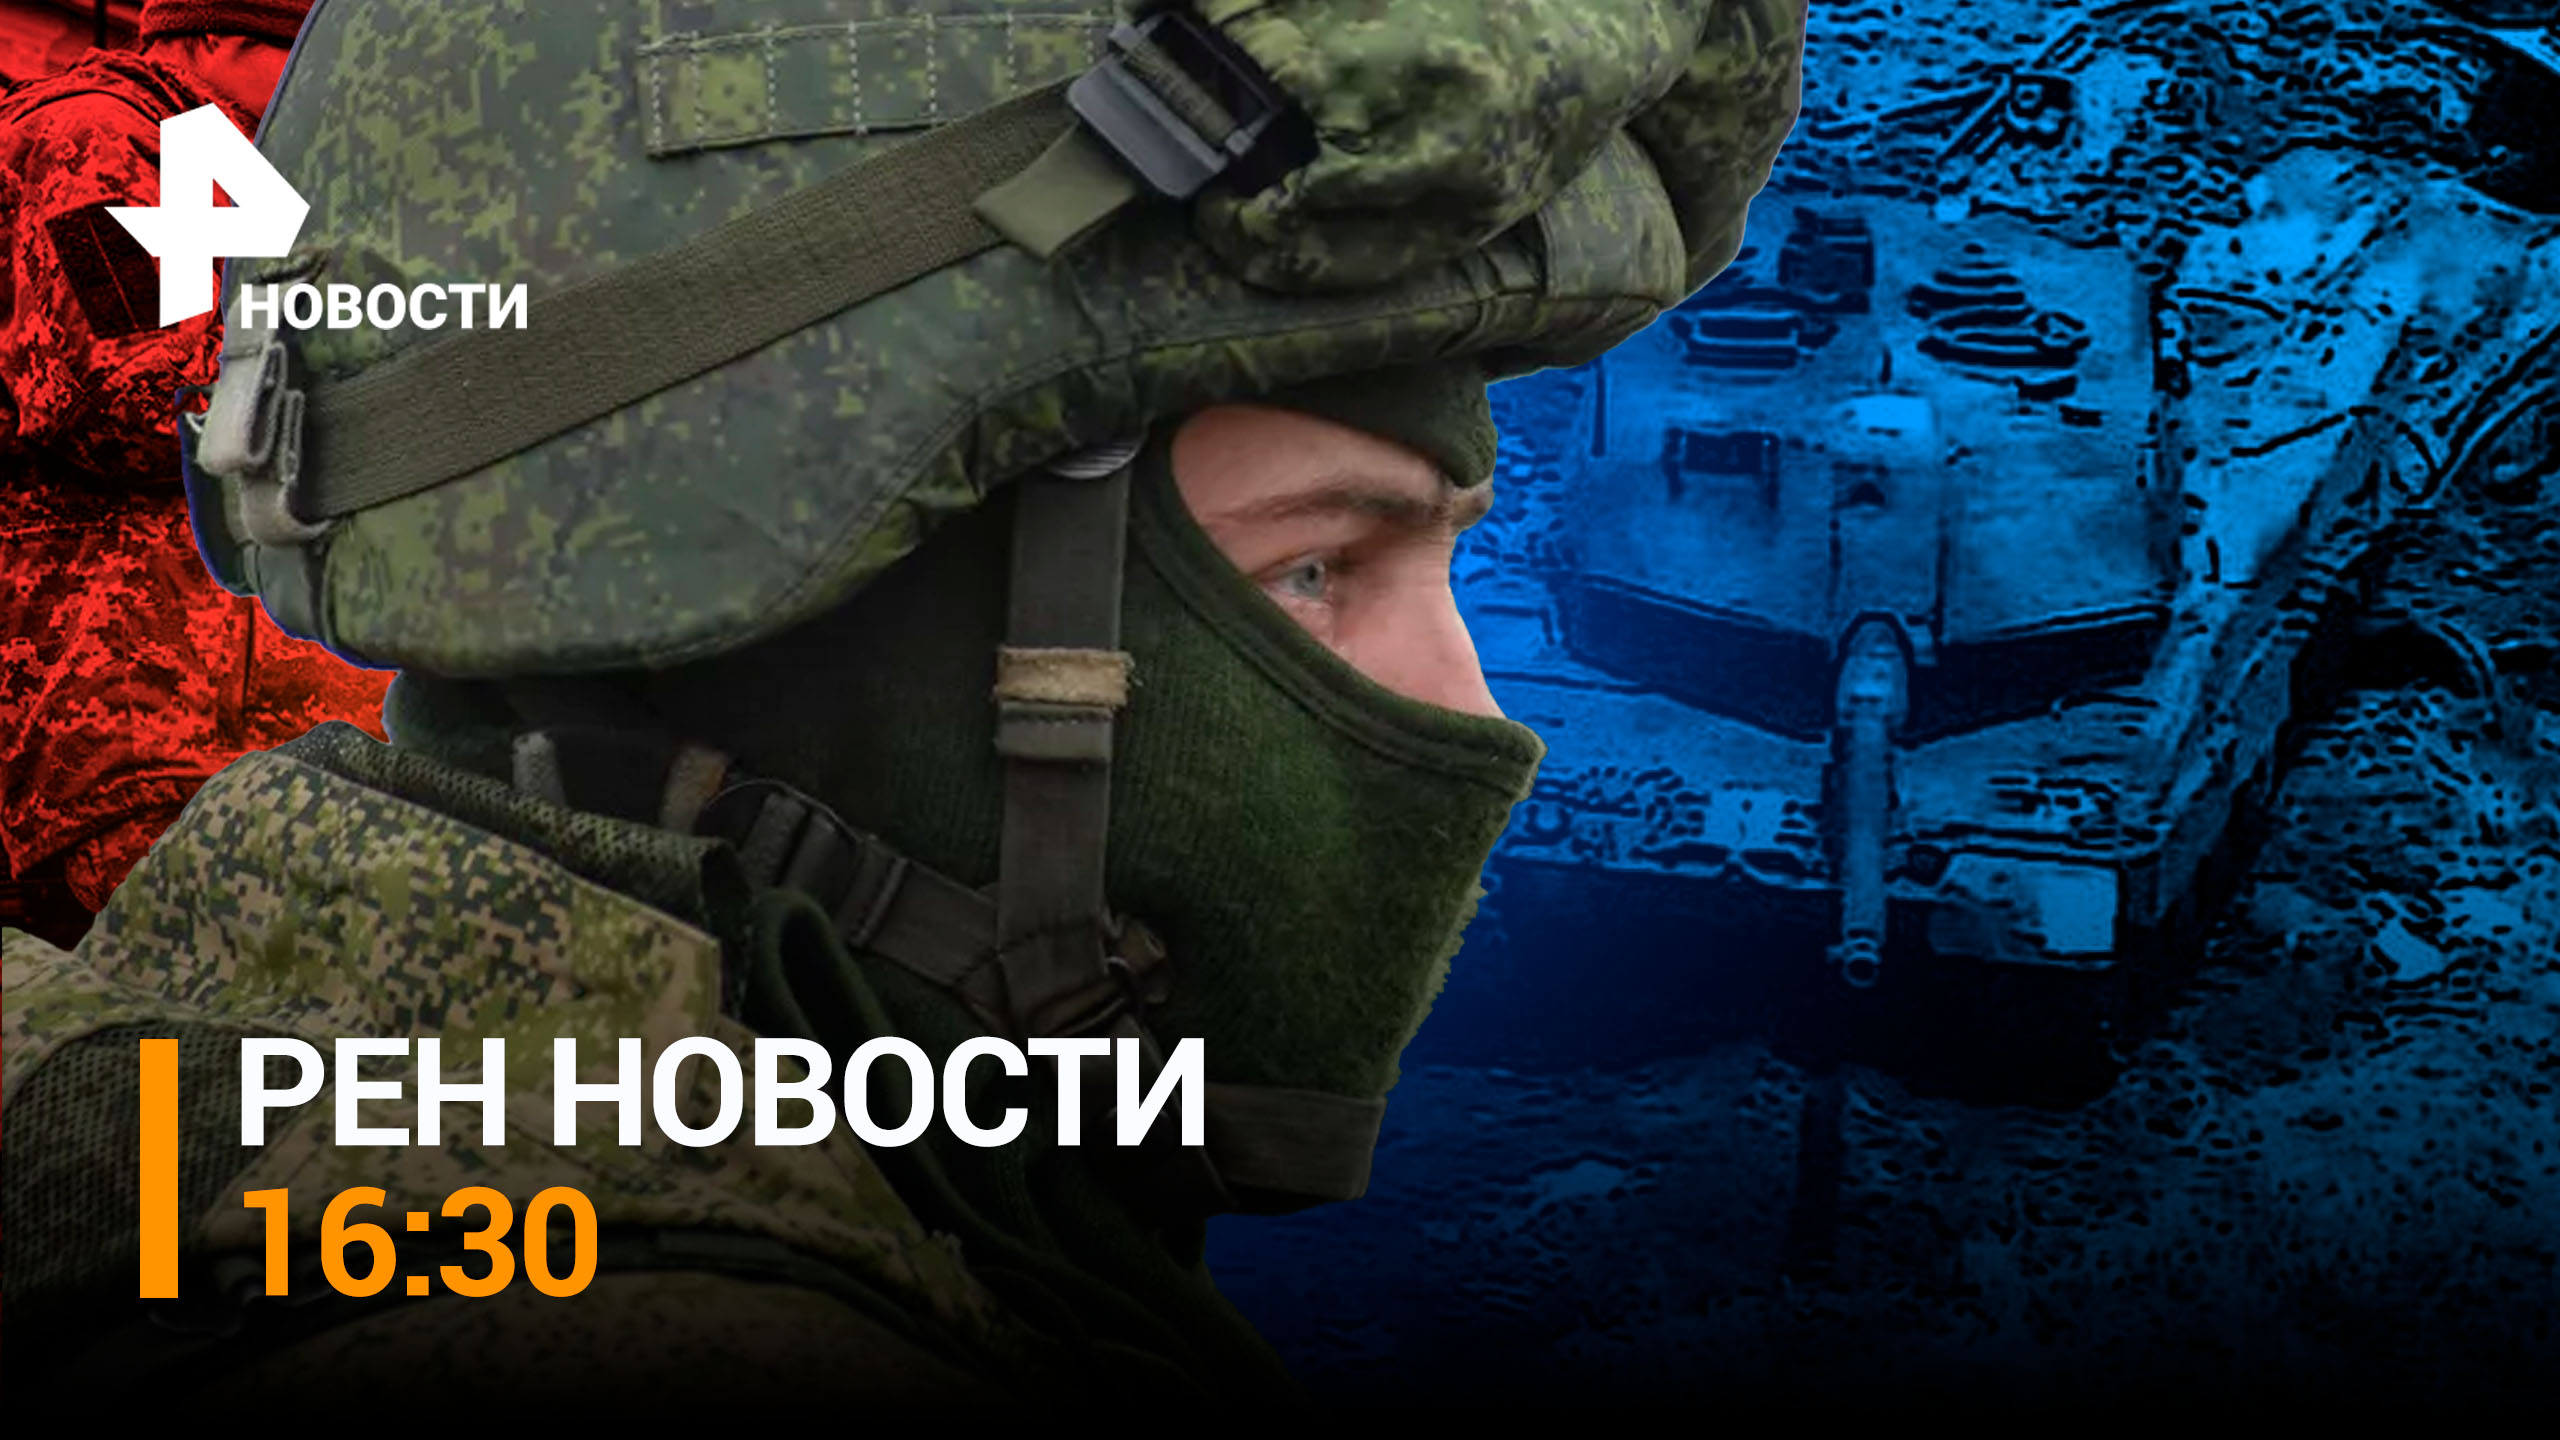 Колоссальные потери ВСУ в Донецкой области: 20 танков и БМП за сутки / РЕН НОВОСТИ 16:30